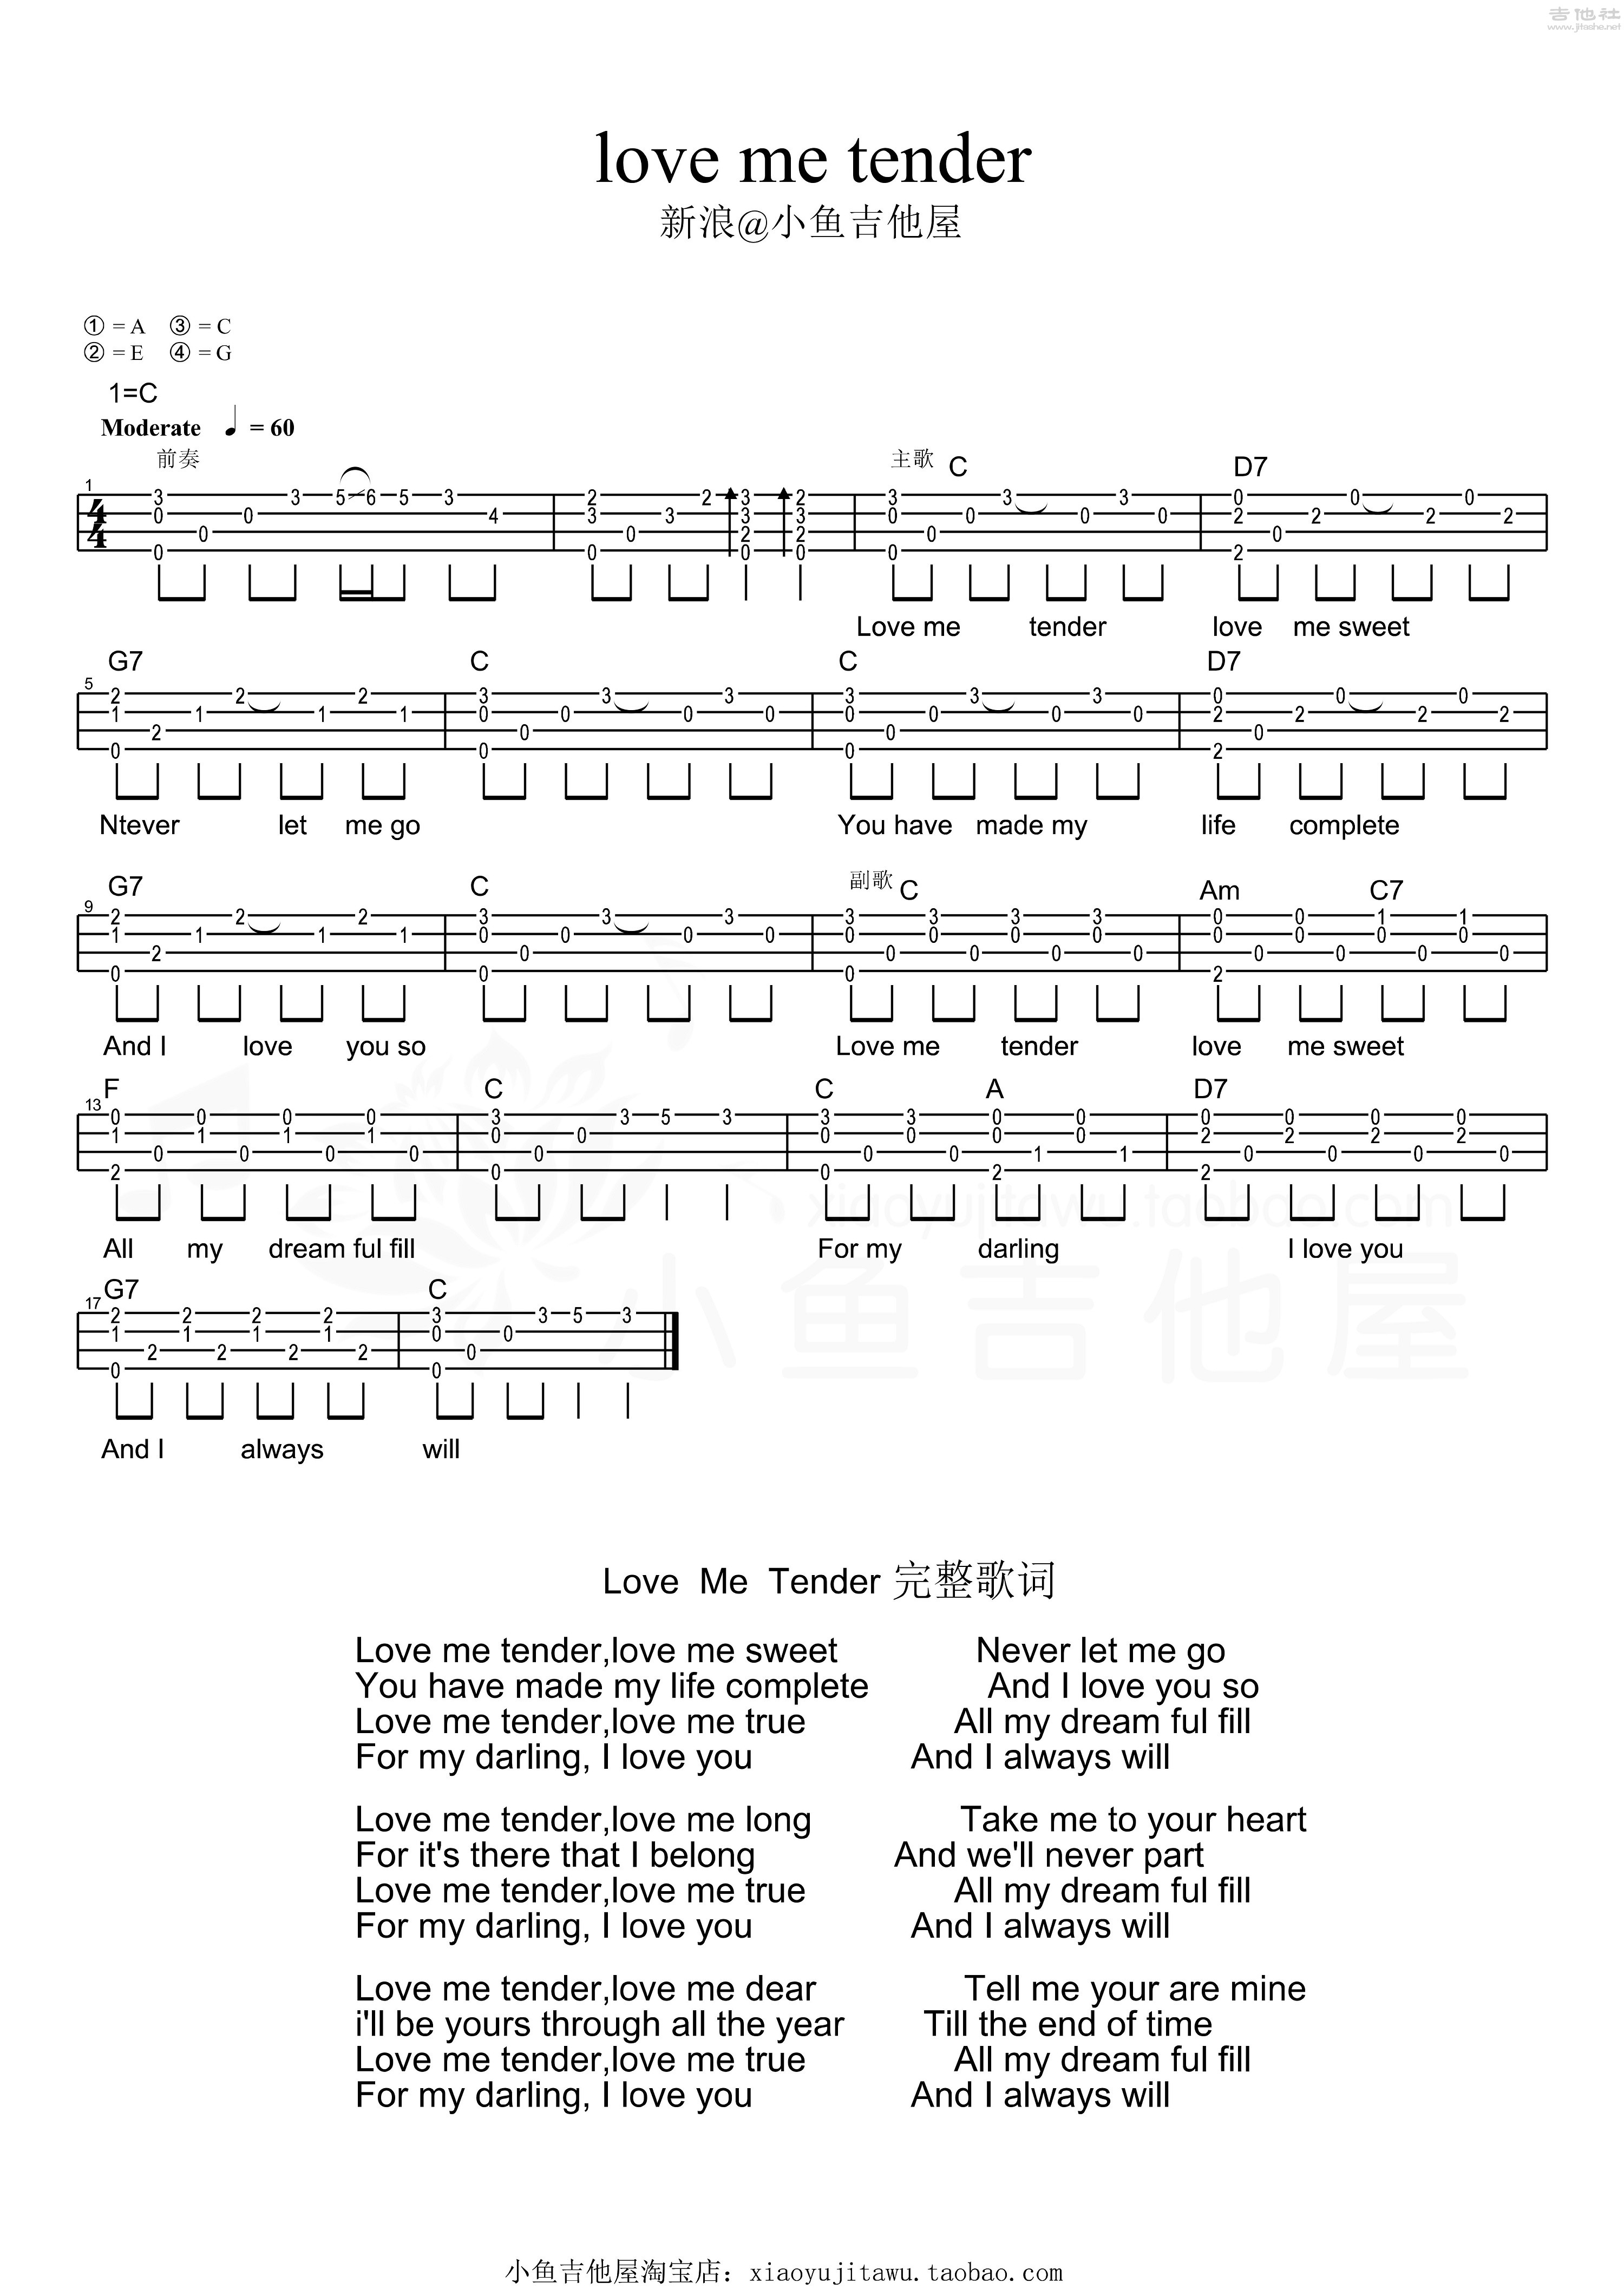 Love me tender吉他谱(图片谱,弹唱,尤克里里,教程)_Elvis Presley(猫王;埃尔维斯·普雷斯利)_love me tender.jpeg